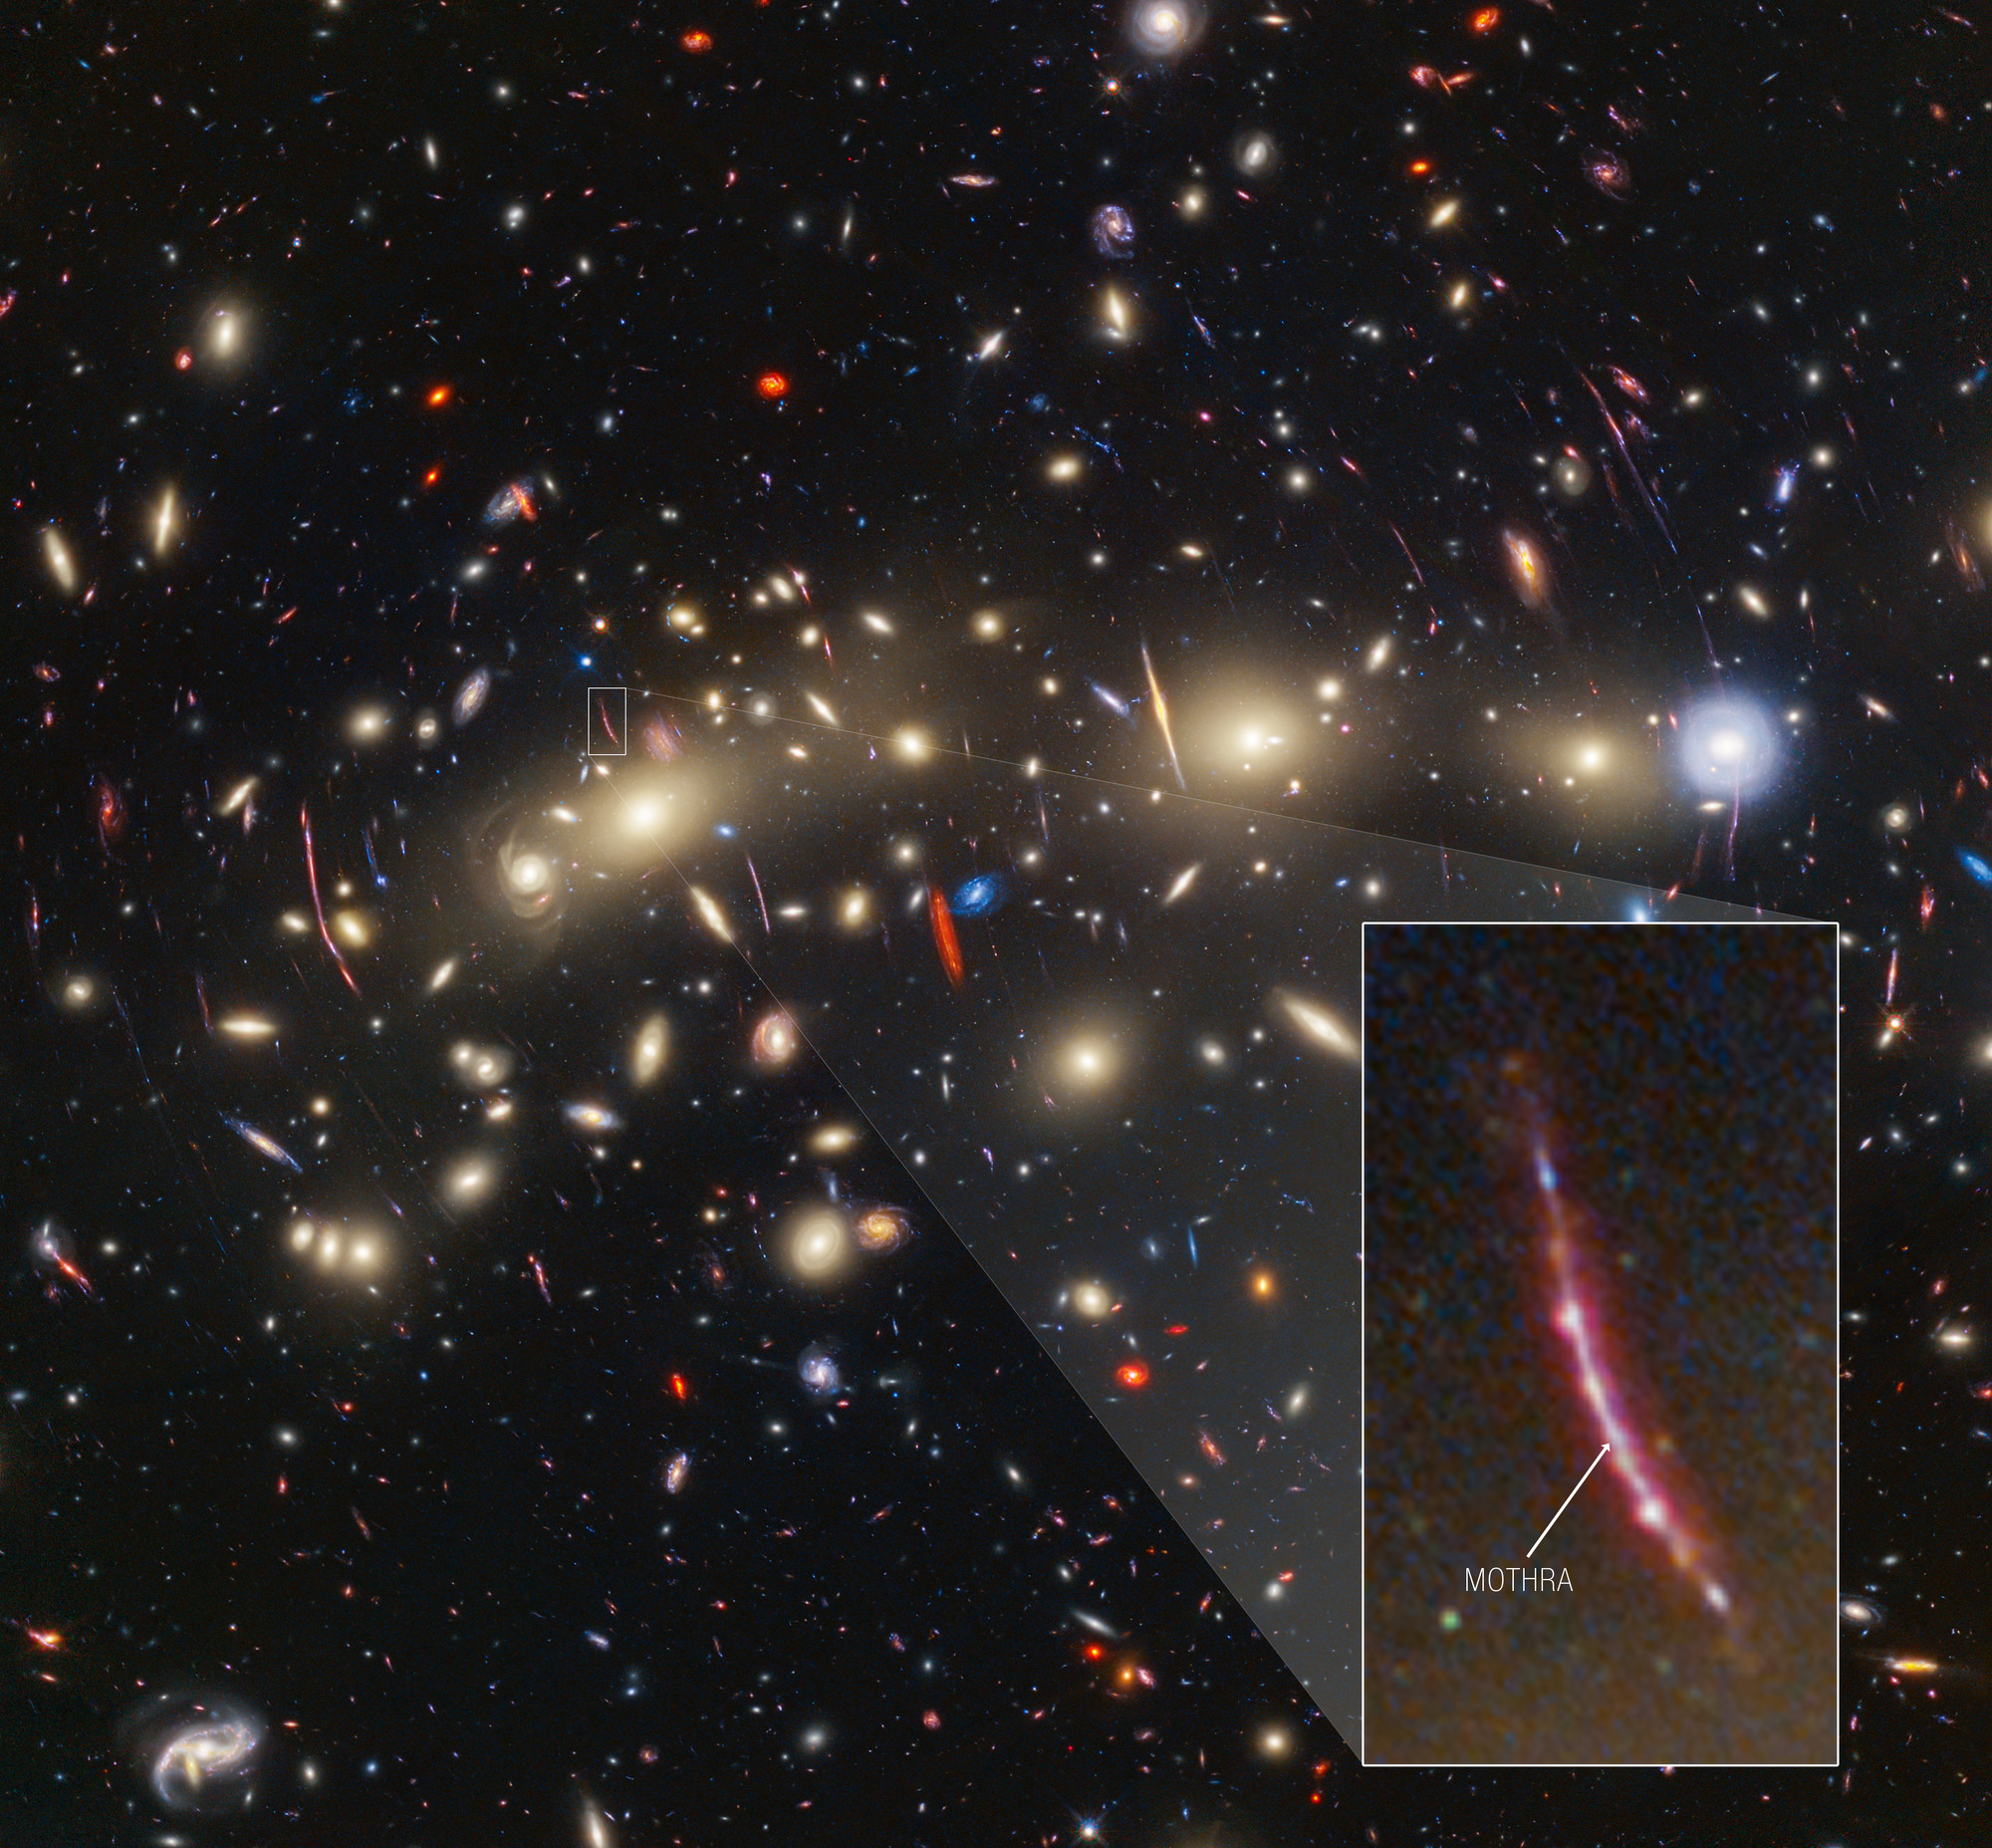 Na ilustracji: Obraz gromady galaktyk MACS0416 (z=0,396) z powiększonym fragmentem galaktyki tła, która istniała około 3 miliardy lat po Wielkim Wybuchu (z=2,091). W tej galaktyce tła astronomowie zaobserwowali zjawisko przejściowe lub obiekt, któremu nadali pseudonim „Mothra”. Mothra jest gwiazdą zmieniającą obserwowaną jasność w czasie. Dodatkowo jej jasność została wzmocniona przynajmniej 4000 razy przez soczewkowanie grawitacyjne. Astronomowie uważają, że jasność Mothra jest wzmocniona nie tylko przez soczewkowanie grawitacyjne pochodzące od gromady galaktyk MACS0416, ale również przez milisoczewkowanie grawitacyjne przez obiekt o masie mniej więcej gromady kulistej. Źródło: NASA, ESA, CSA, STScI, J. Diego (Instituto de Física de Cantabria, Spain), J. D’Silva (U. Western Australia), A. Koekemoer (STScI), J. Summers & R. Windhorst (ASU), and H. Yan (U. Missouri)